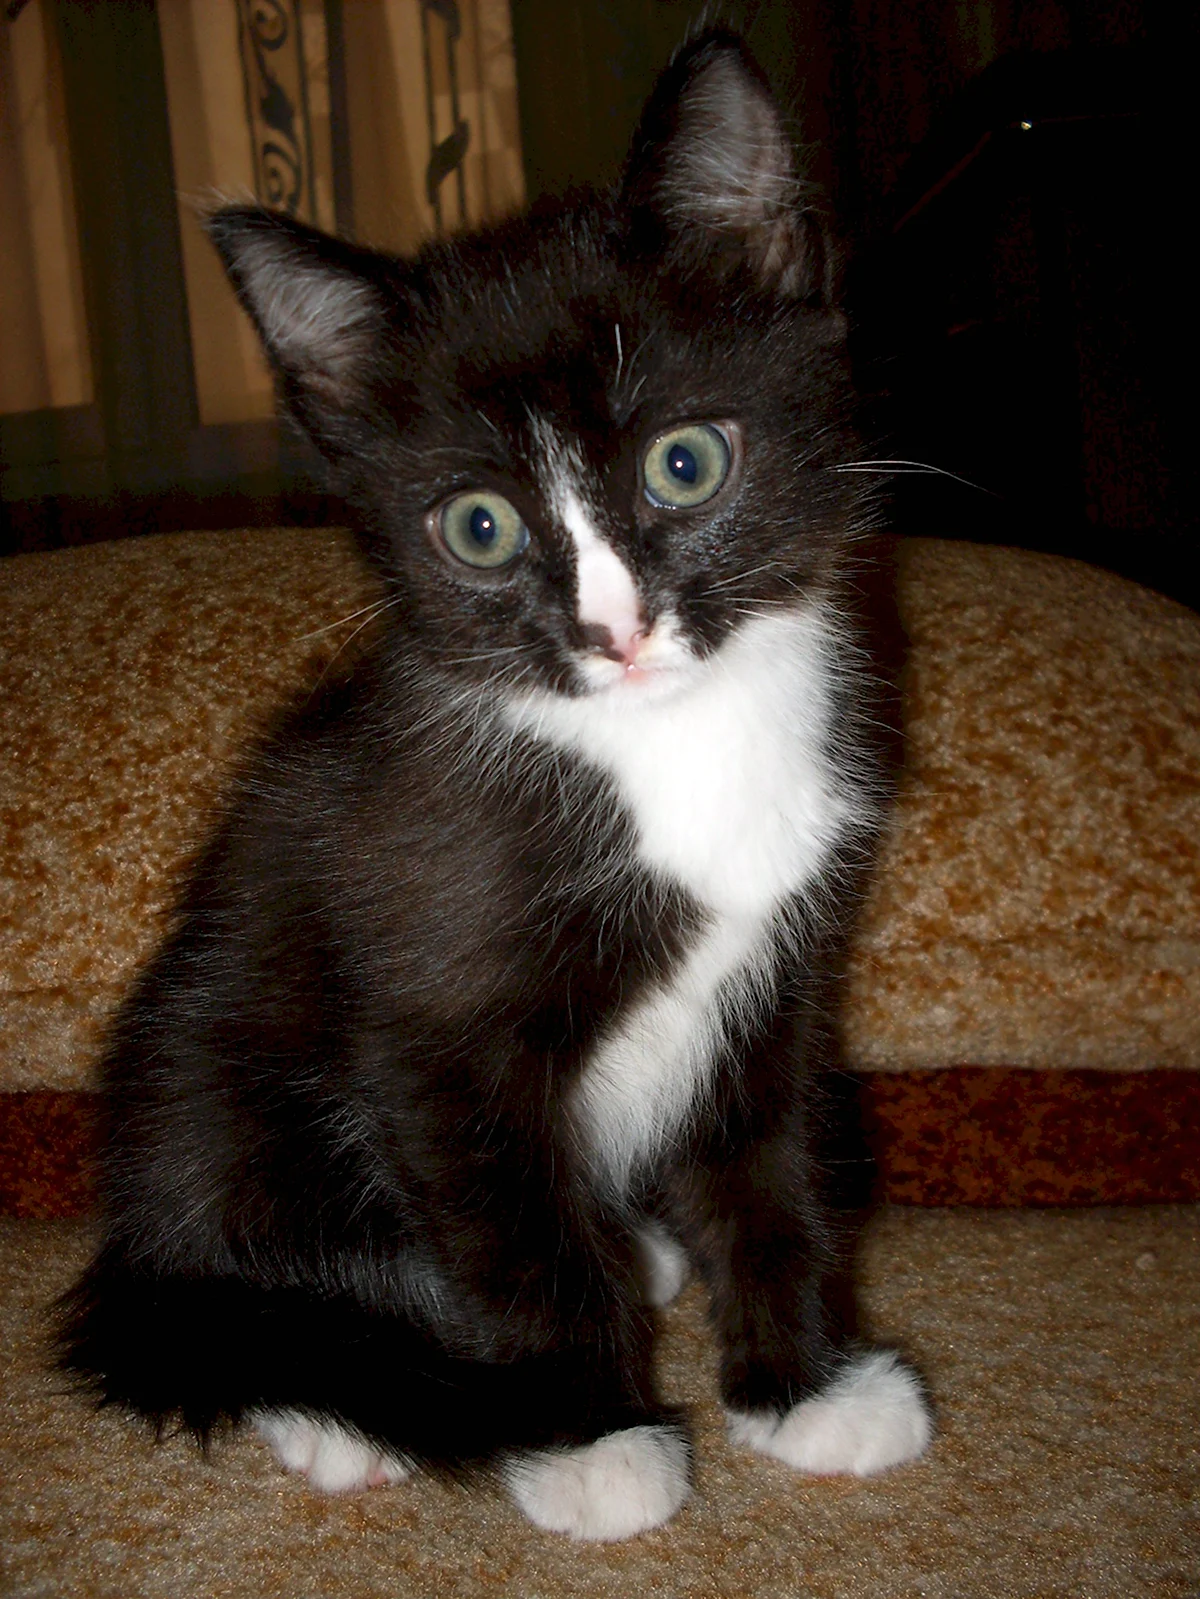 Черный котенок с белыми лапками